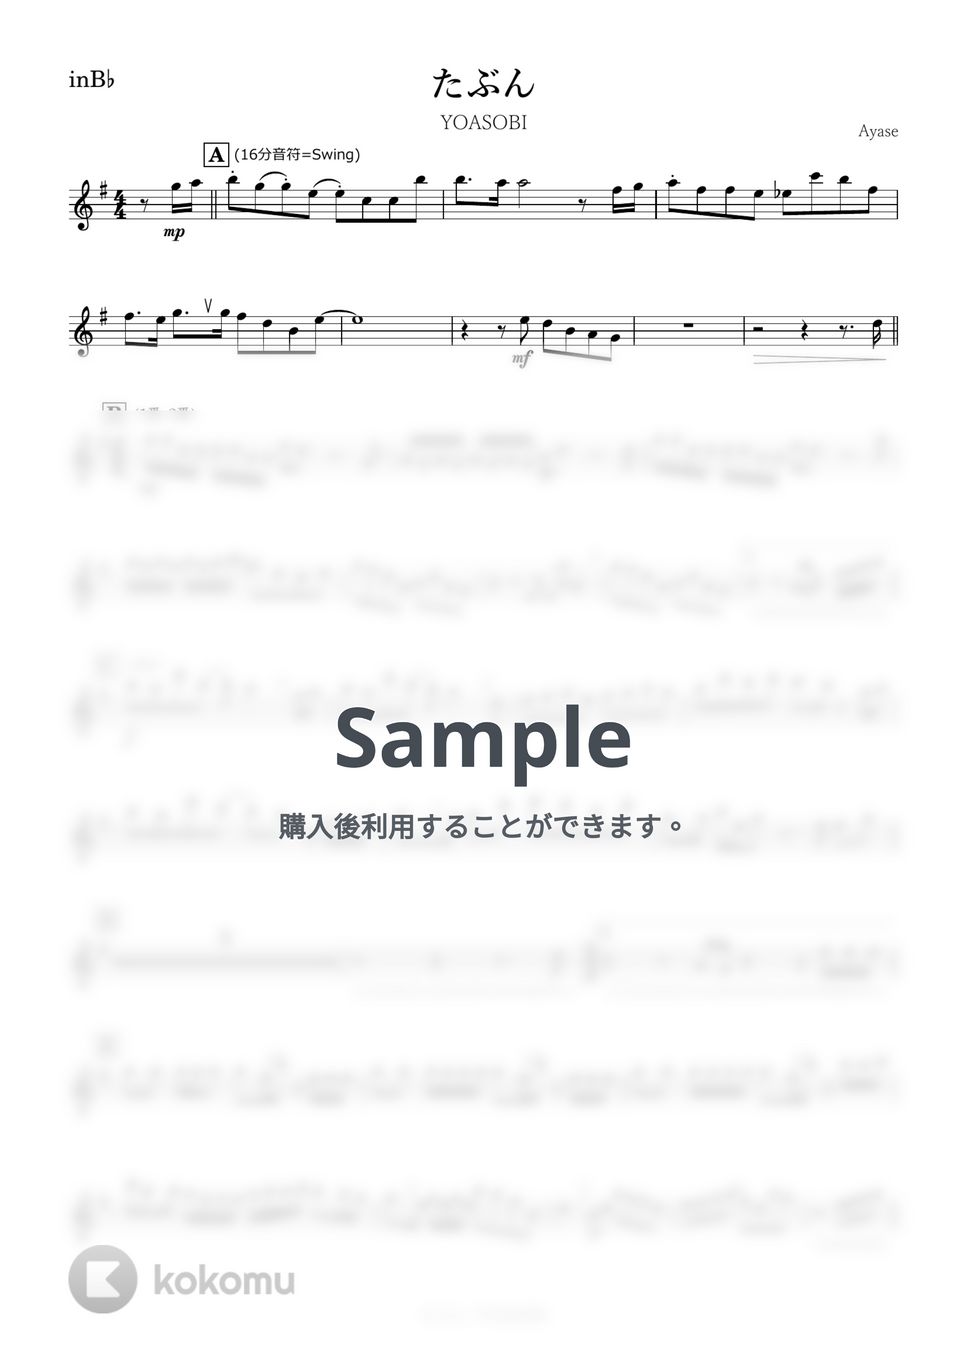 YOASOBI - たぶん (B♭) by kanamusic